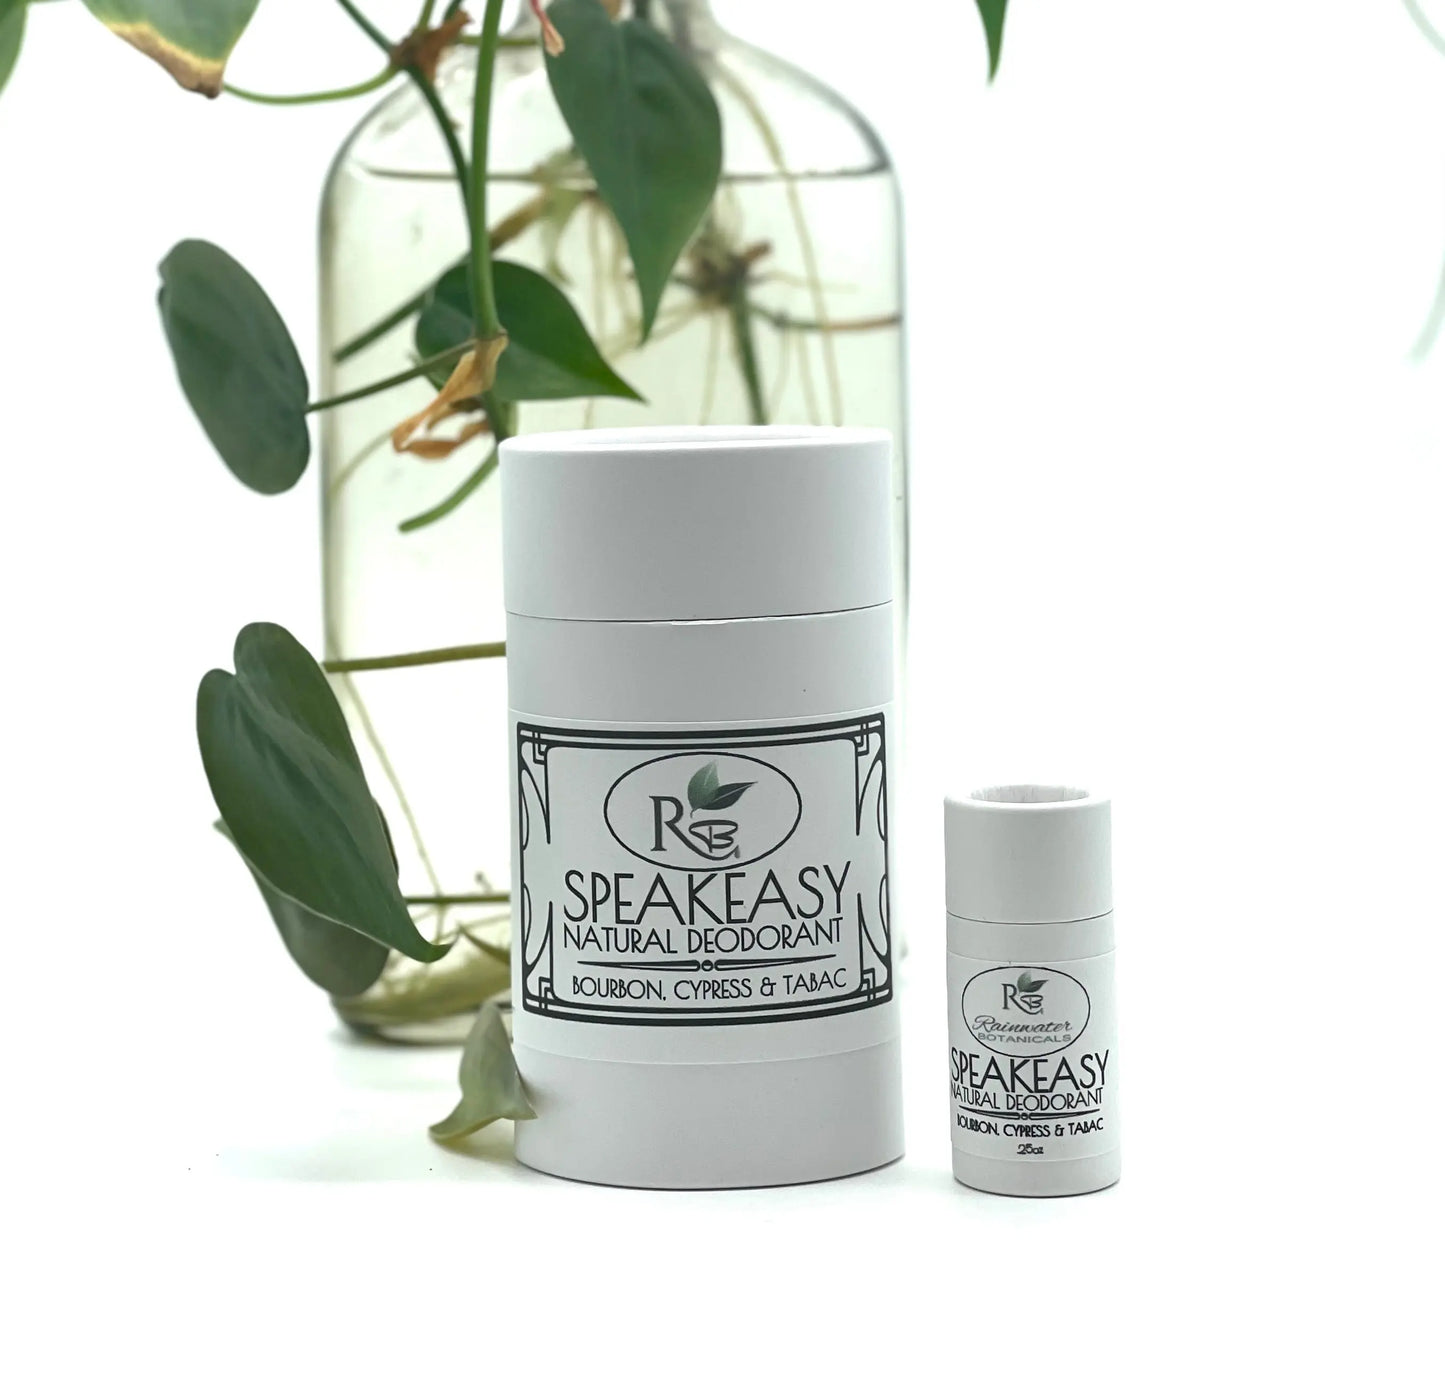 Effective Natural Deodorant, vegan, zero waste Rainwater Botanicals